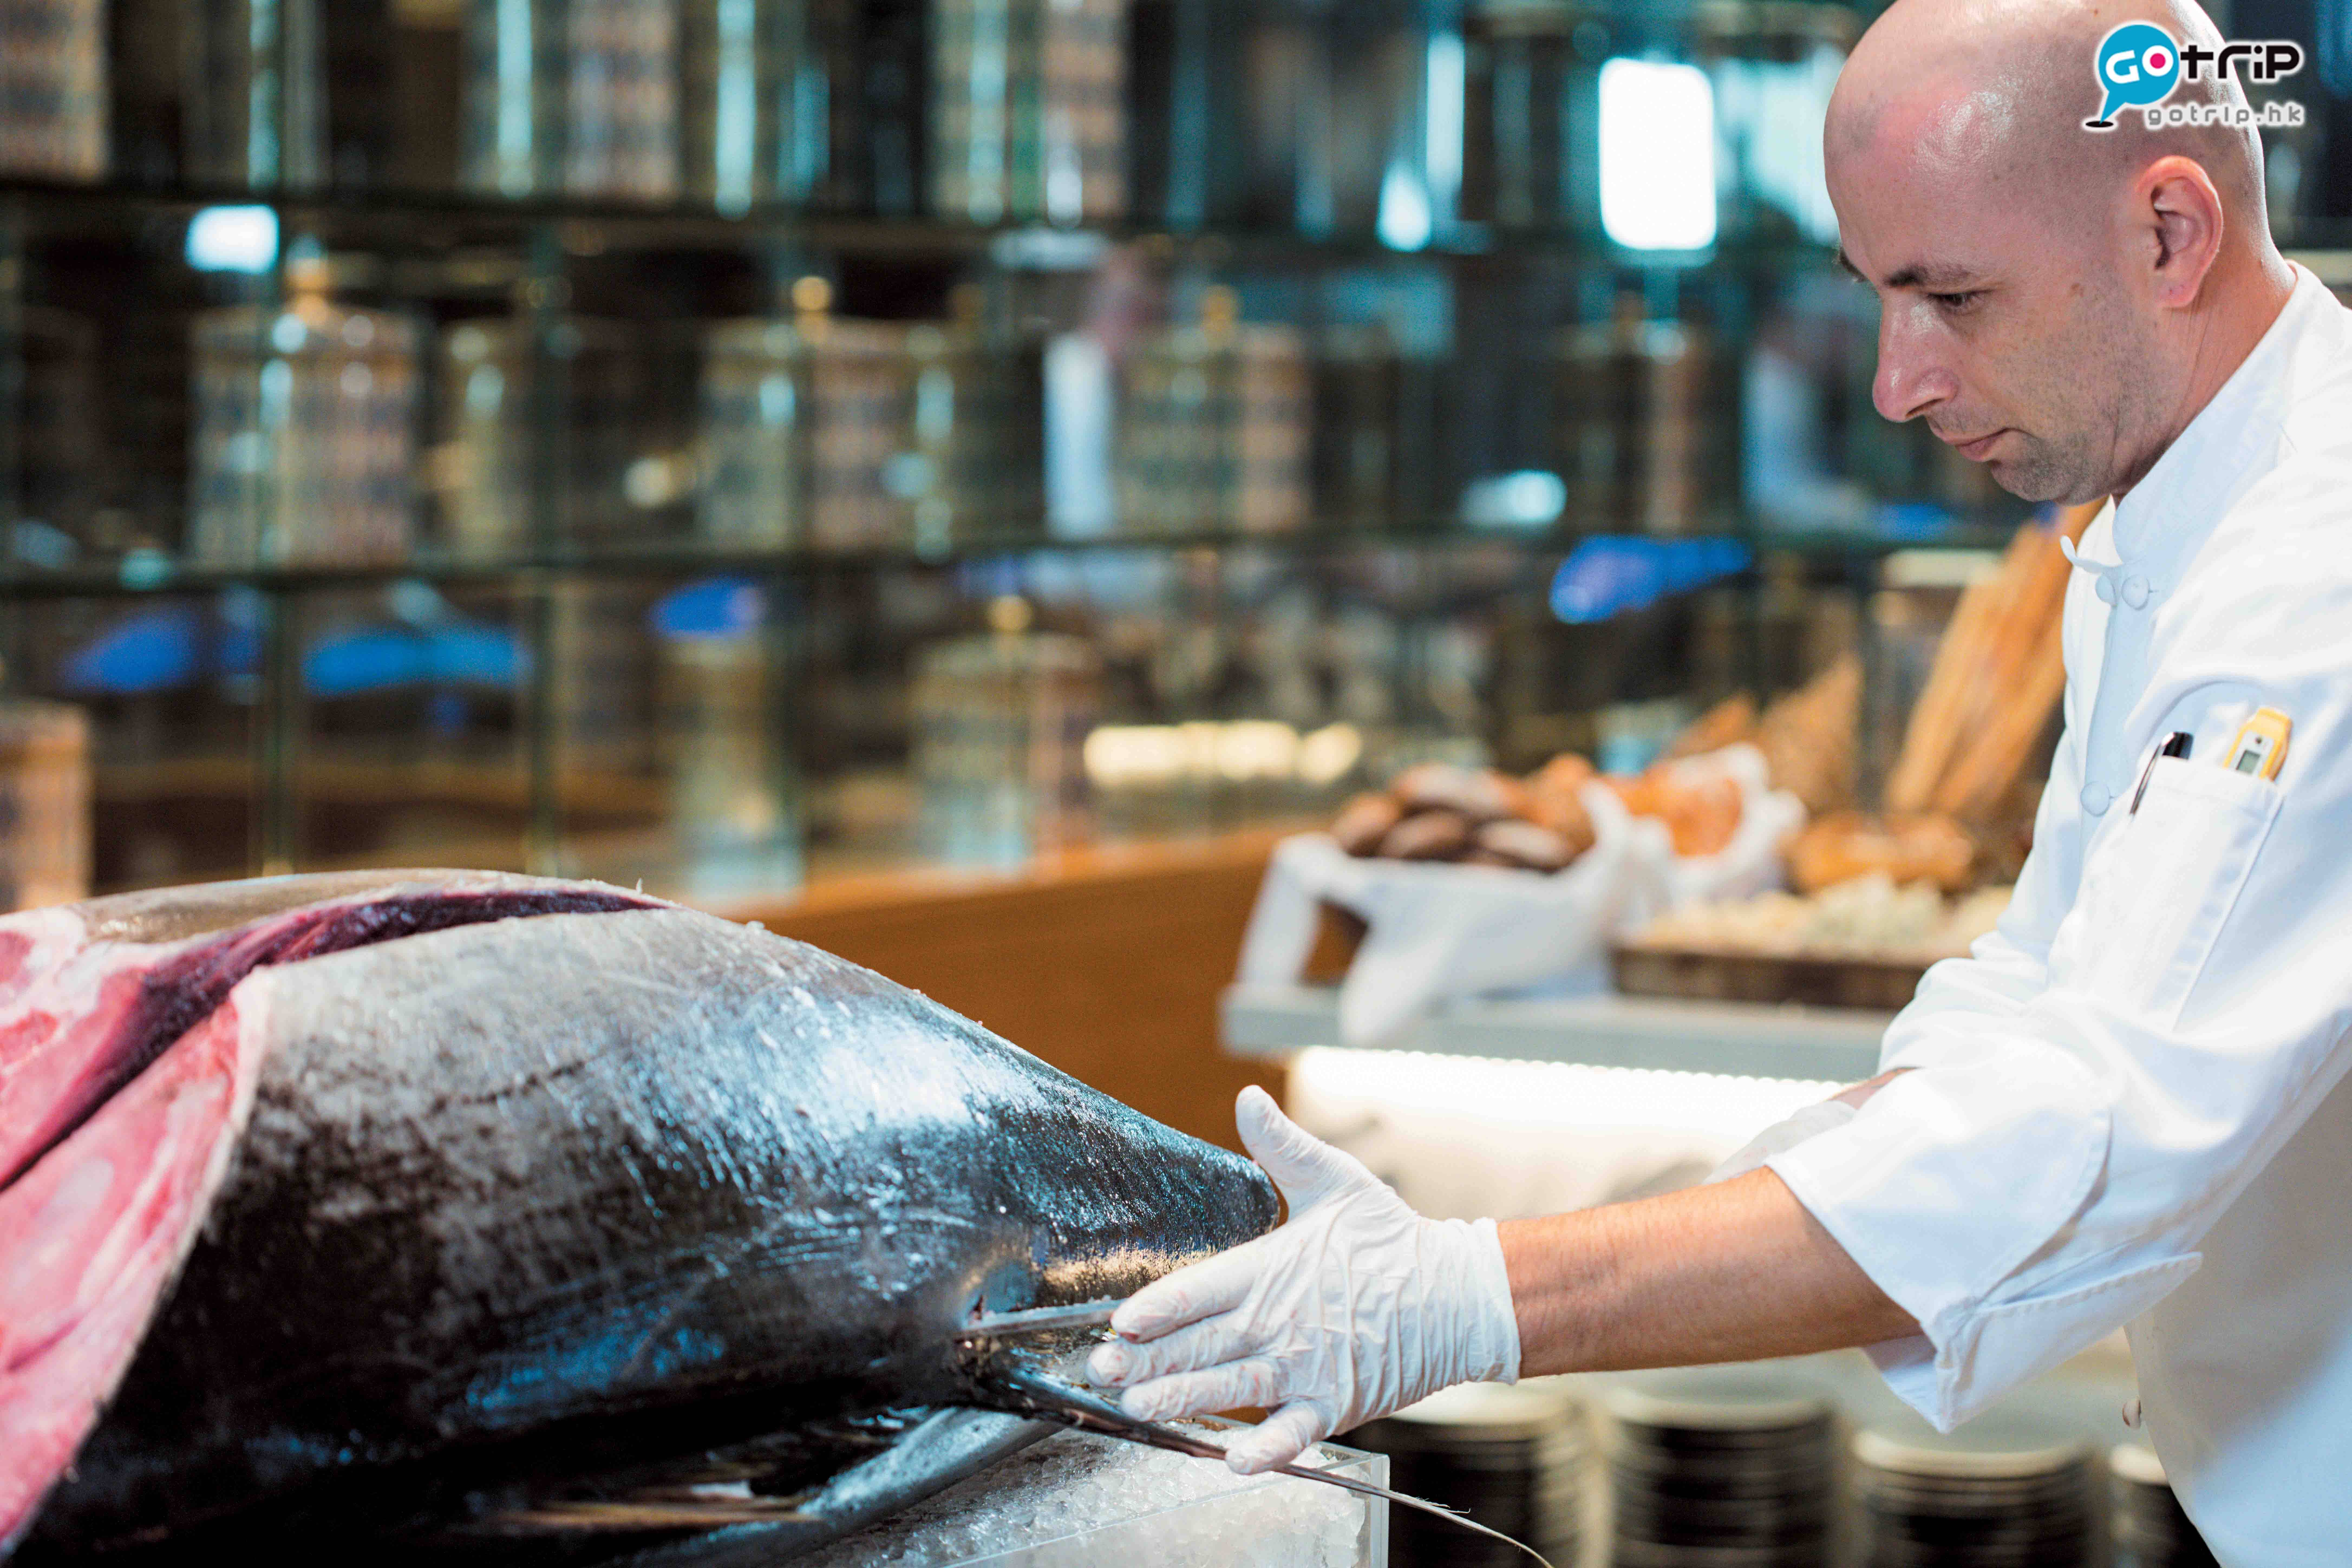 澳門自助餐2019 每條黃鰭吞拿魚重約50至60公斤，將由廚師的精巧刀工切出各個不同鮮味的部位。